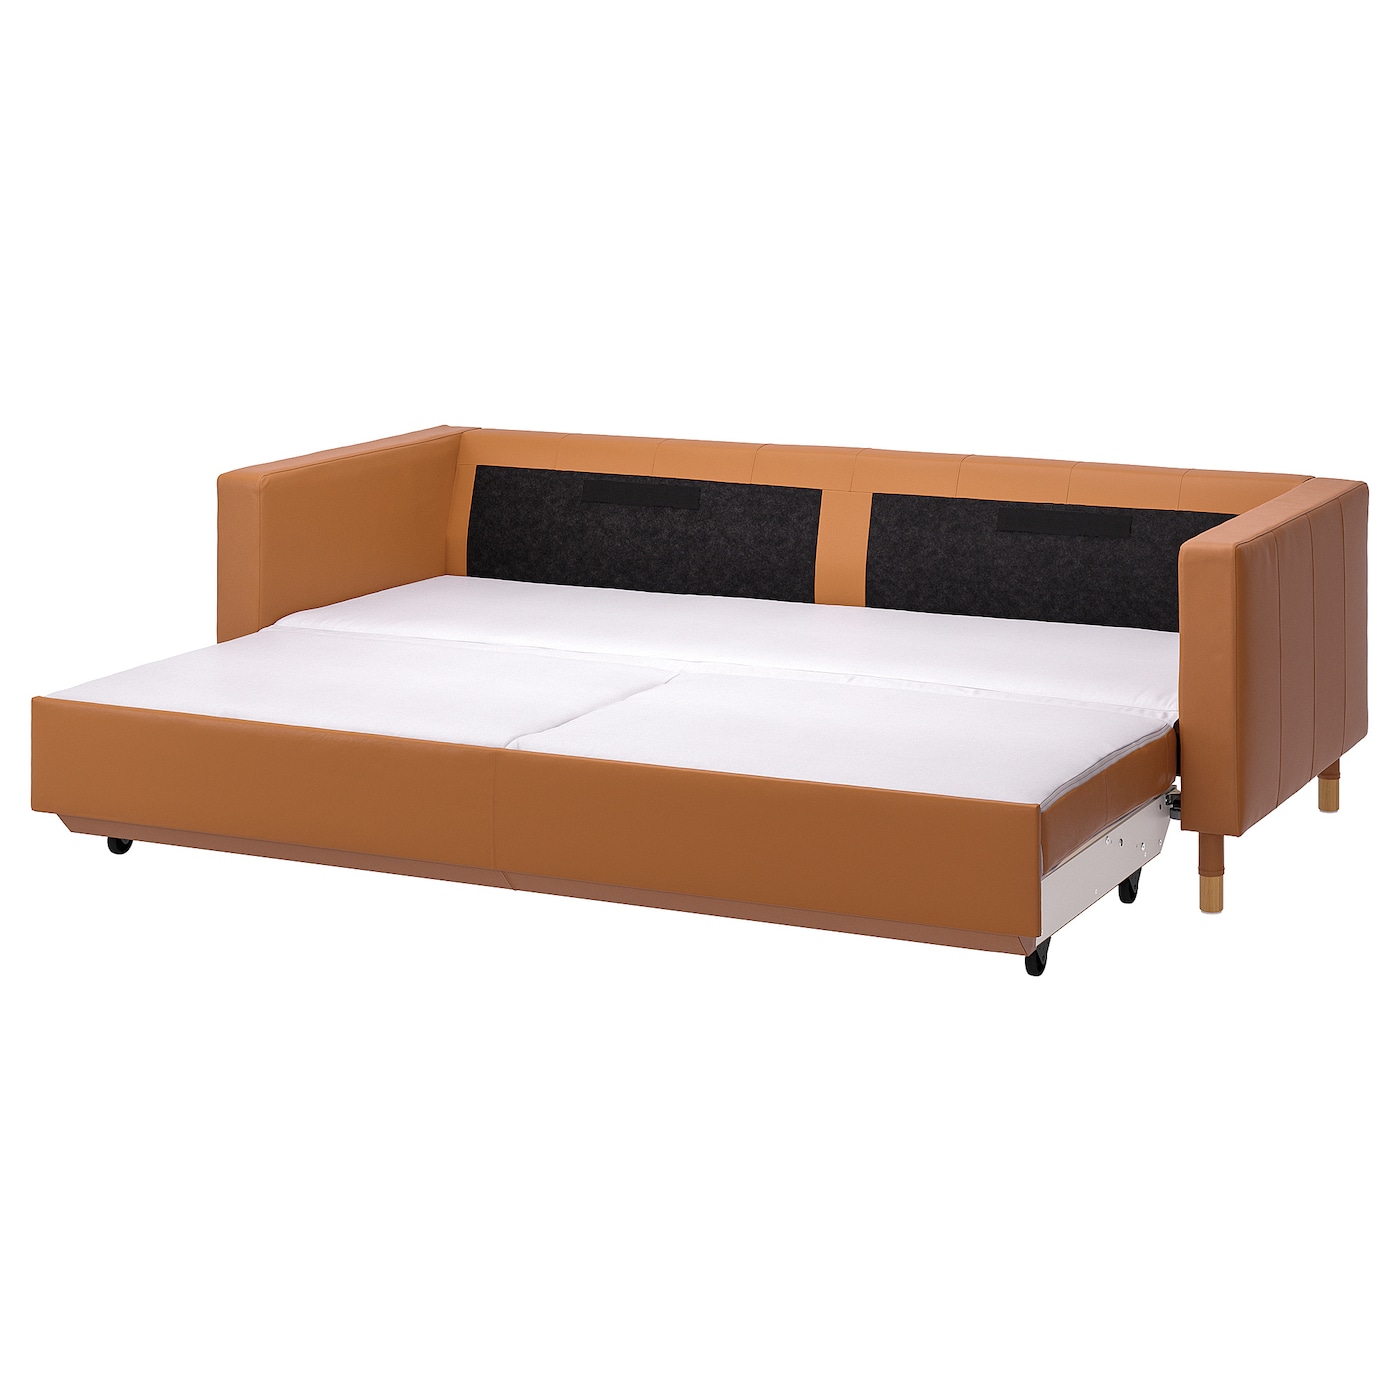 3-местный диван-кровать - IKEA LANDSKRONA, 84x92x223см, оранжевый, кожа, ЛАНДСКРУНА ИКЕА